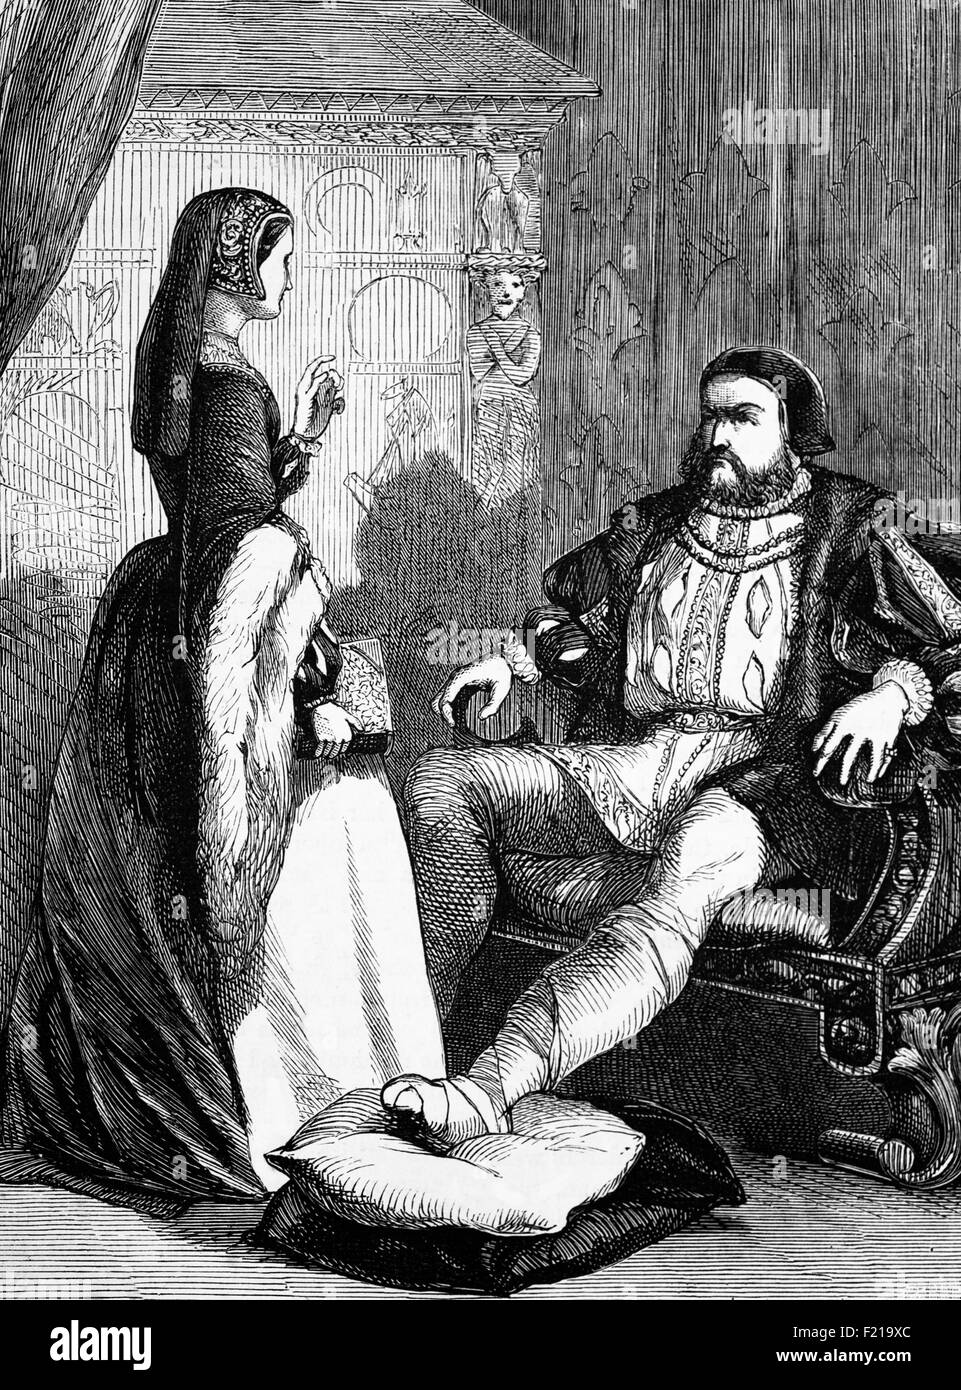 Heinrich VIII., möglicherweise unter Gicht und seiner letzten Frau, Königin Catherine Parr, London, England. Spät im Leben wurde Henry fettleibig, mit einem Taillenumfang von 54 Zoll und möglicherweise litt an Gicht. Seine Fettleibigkeit und andere medizinische Probleme können auf den Jousting Unfall im Jahr 1536, bei dem er erlitt eine Beinwunde, dass seine Ärzte schwer zu behandeln. Der rastende Unfall wird auch geglaubt, um Henry Stimmungsschwankungen verursacht zu haben, die eine dramatische Auswirkung auf seine Persönlichkeit und Temperament gehabt haben können. Stockfoto